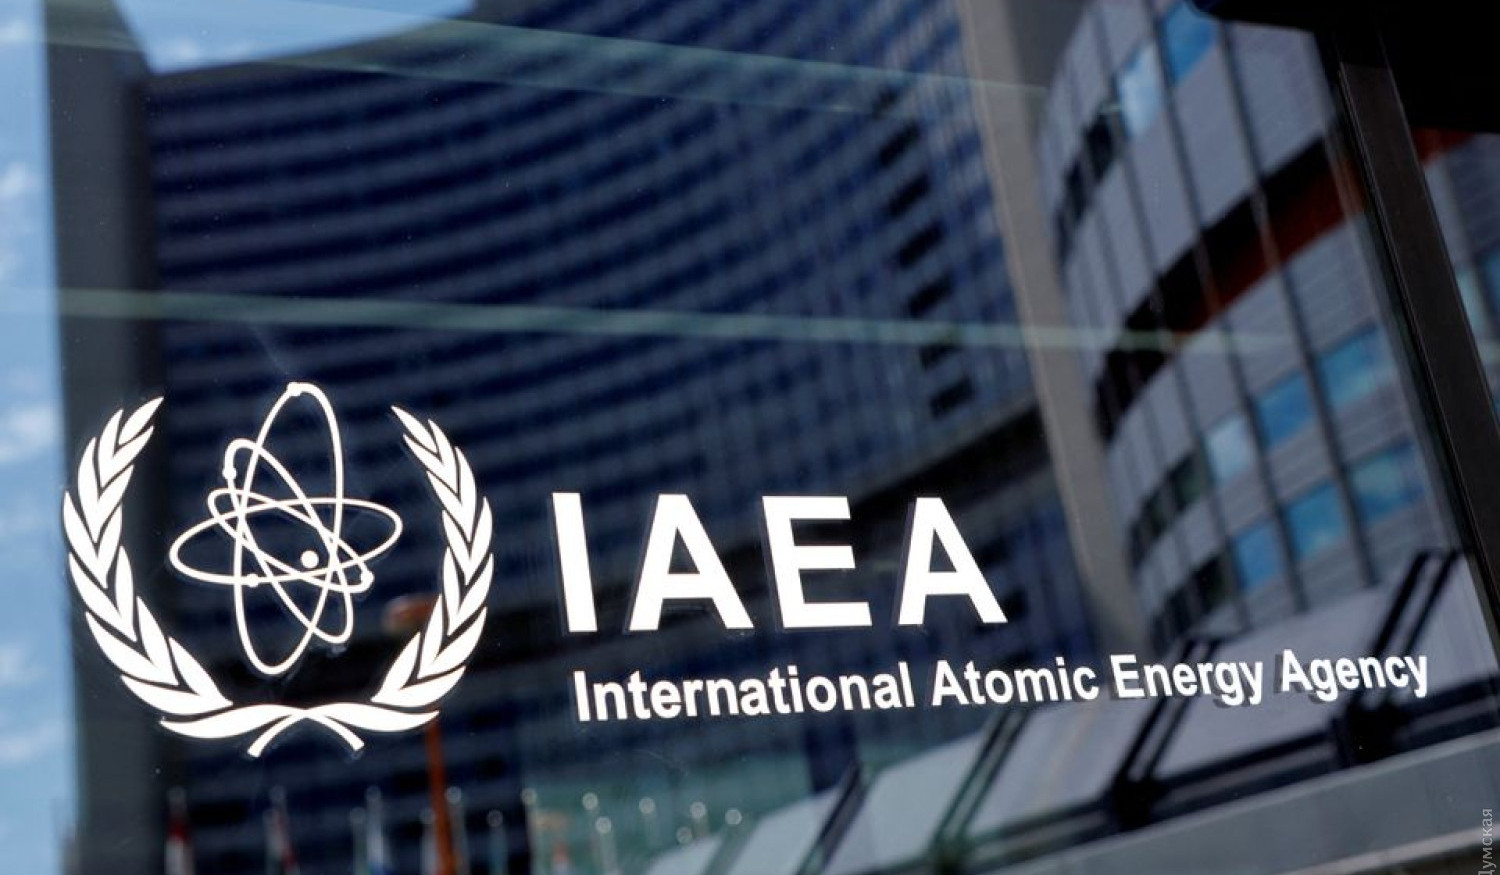 ԱԷՄԳ-ի տեսուչները Ուկրաինայում չհայտարարված միջուկային նյութեր կամ գործողություններ չեն հայտնաբերել